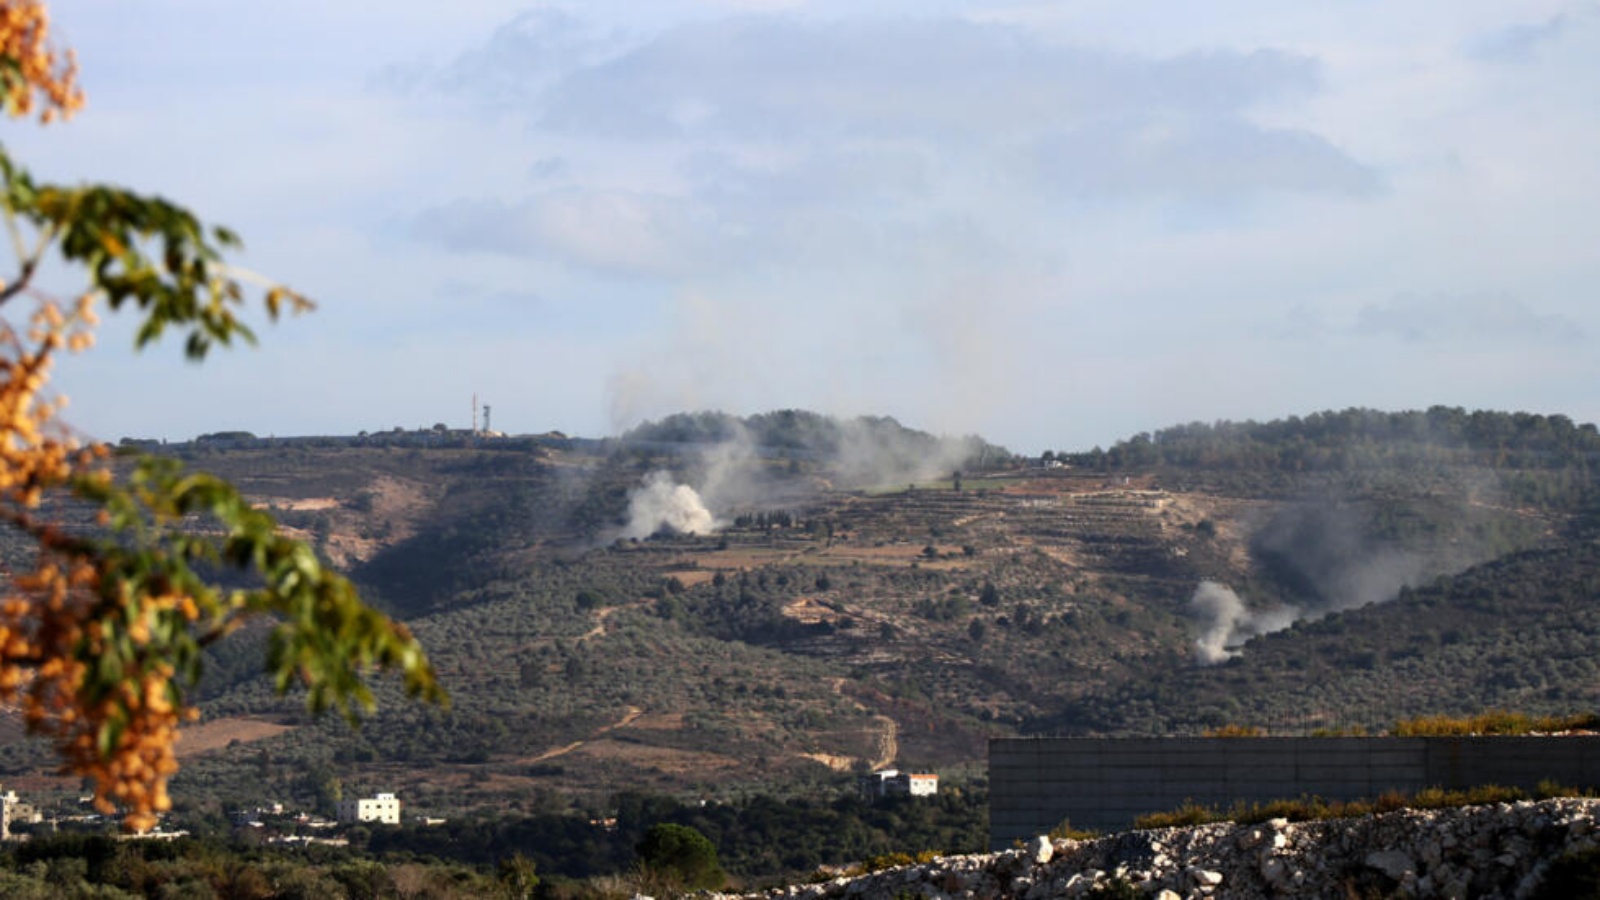 قذائف أطلقت من شمال إسرائيل تسقط بالقرب من قرية يارين بالقرب من الحدود الجنوبية للبنان مع شمال إسرائيل في 10 نوفمبر 